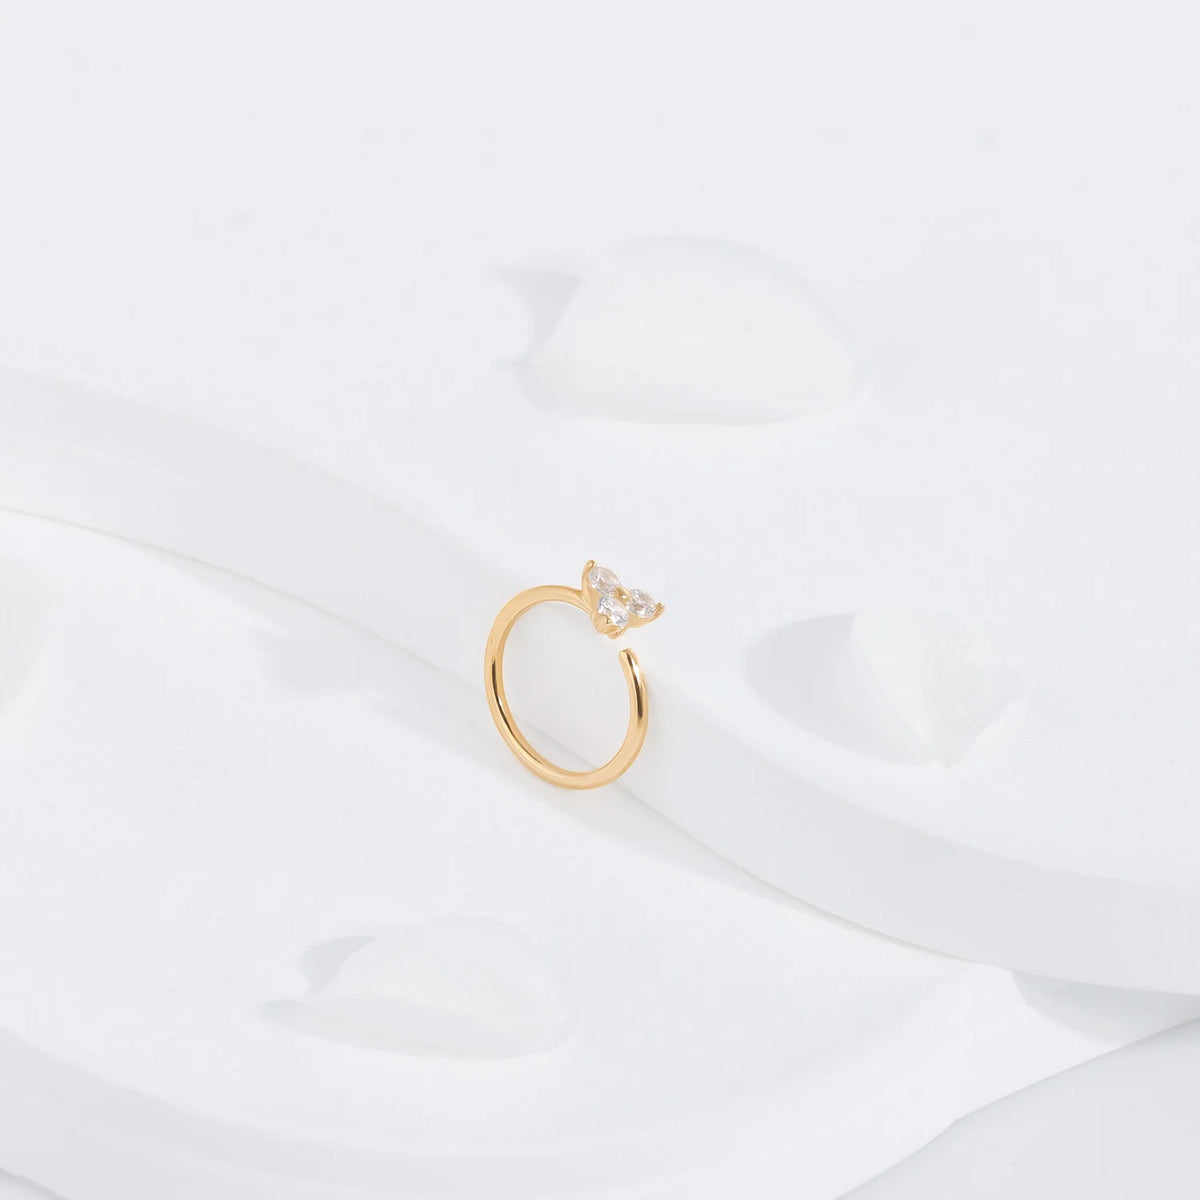 Nasenring aus 14-karätigem Gold mit 3-Punkt-Diamant und klaren CZ-Steinen, nahtloser Ring